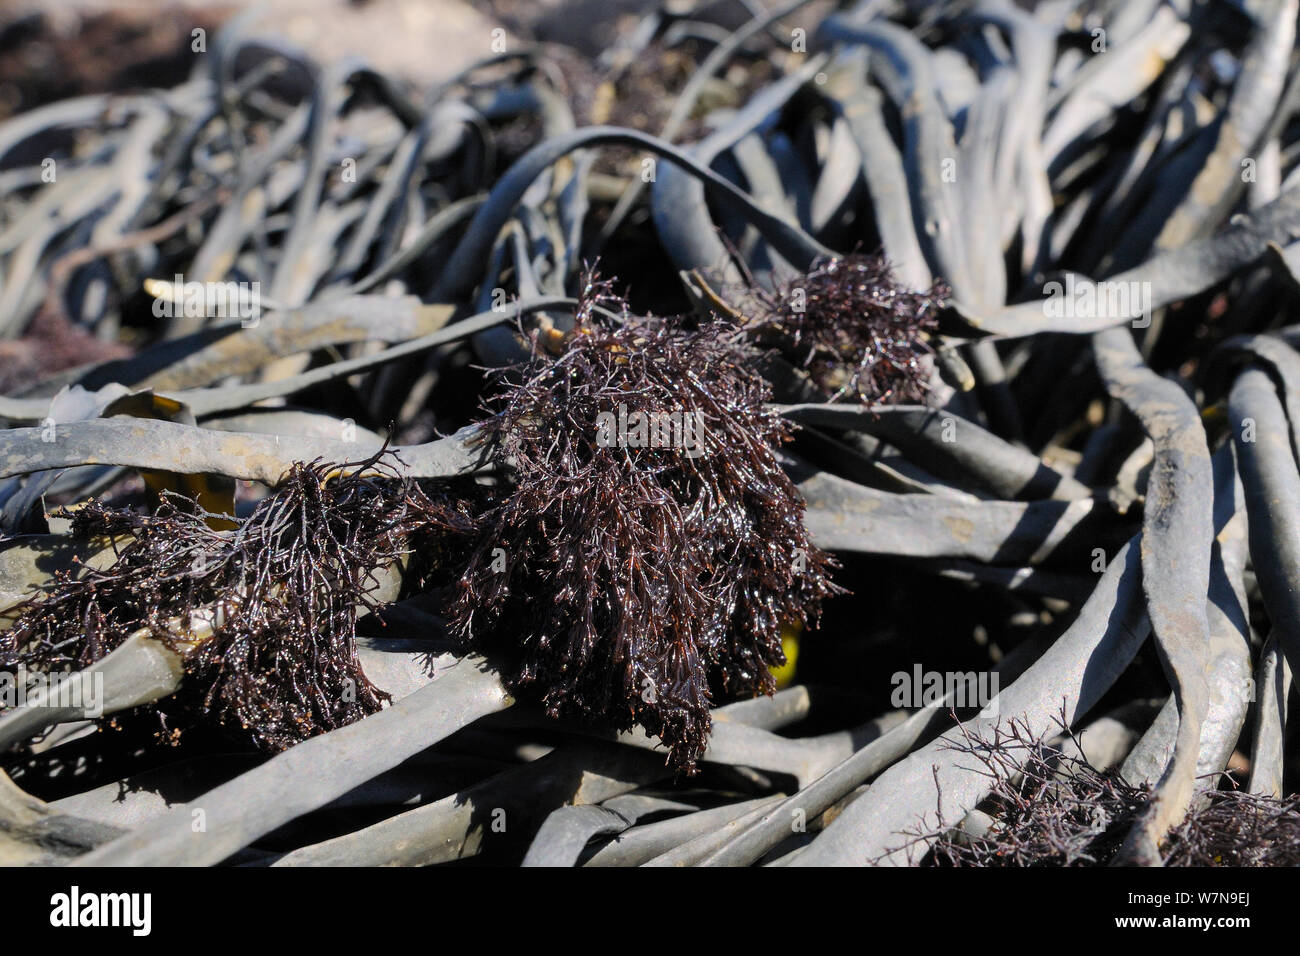 Epífita (alga roja Polysiphonia lanosa) creciendo en tufts en anudado asolando (Ascophyllum nudoso) en una orilla rocosa, Wembury, Devon, Reino Unido, Agosto. Foto de stock